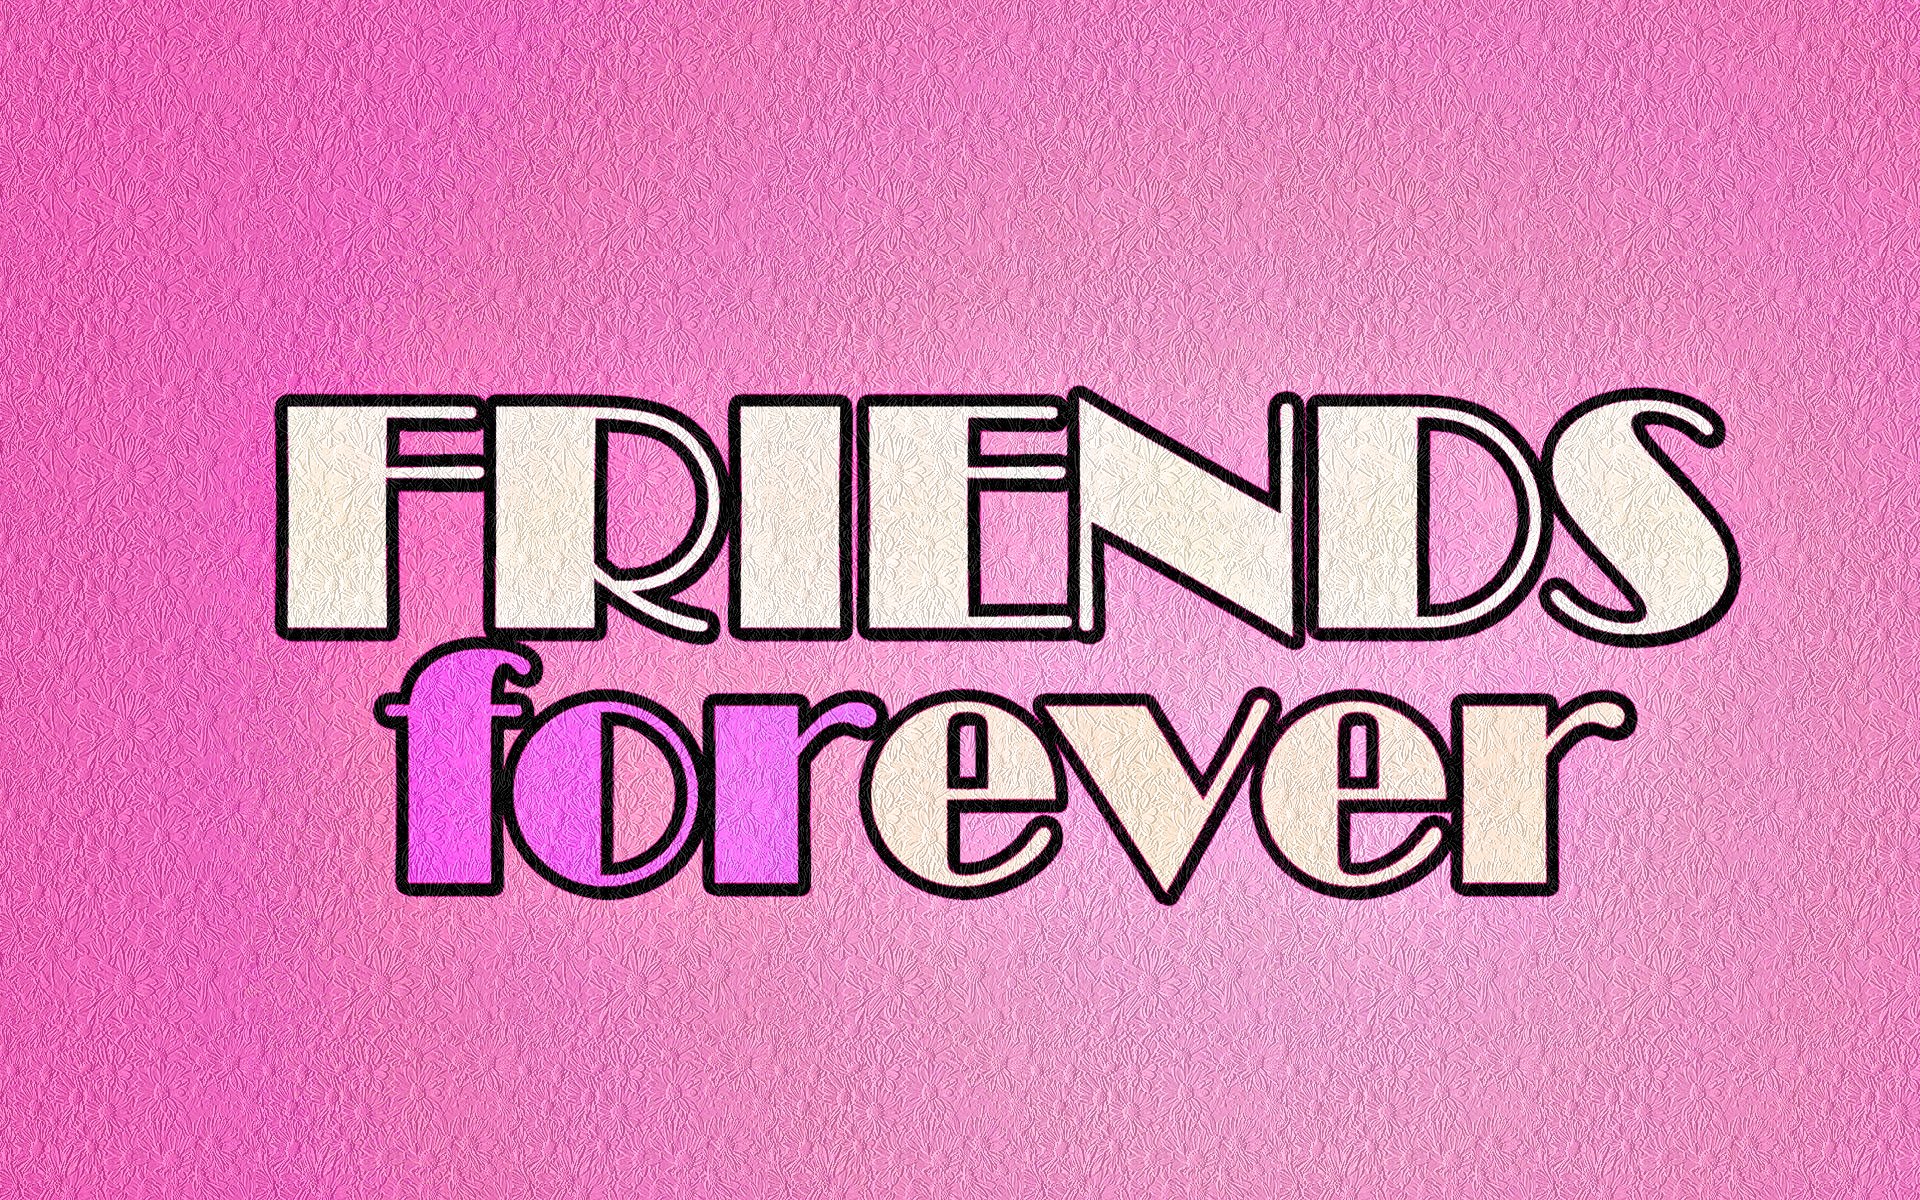 HD Best Friends Forever Backgrounds | PixelsTalk.Net